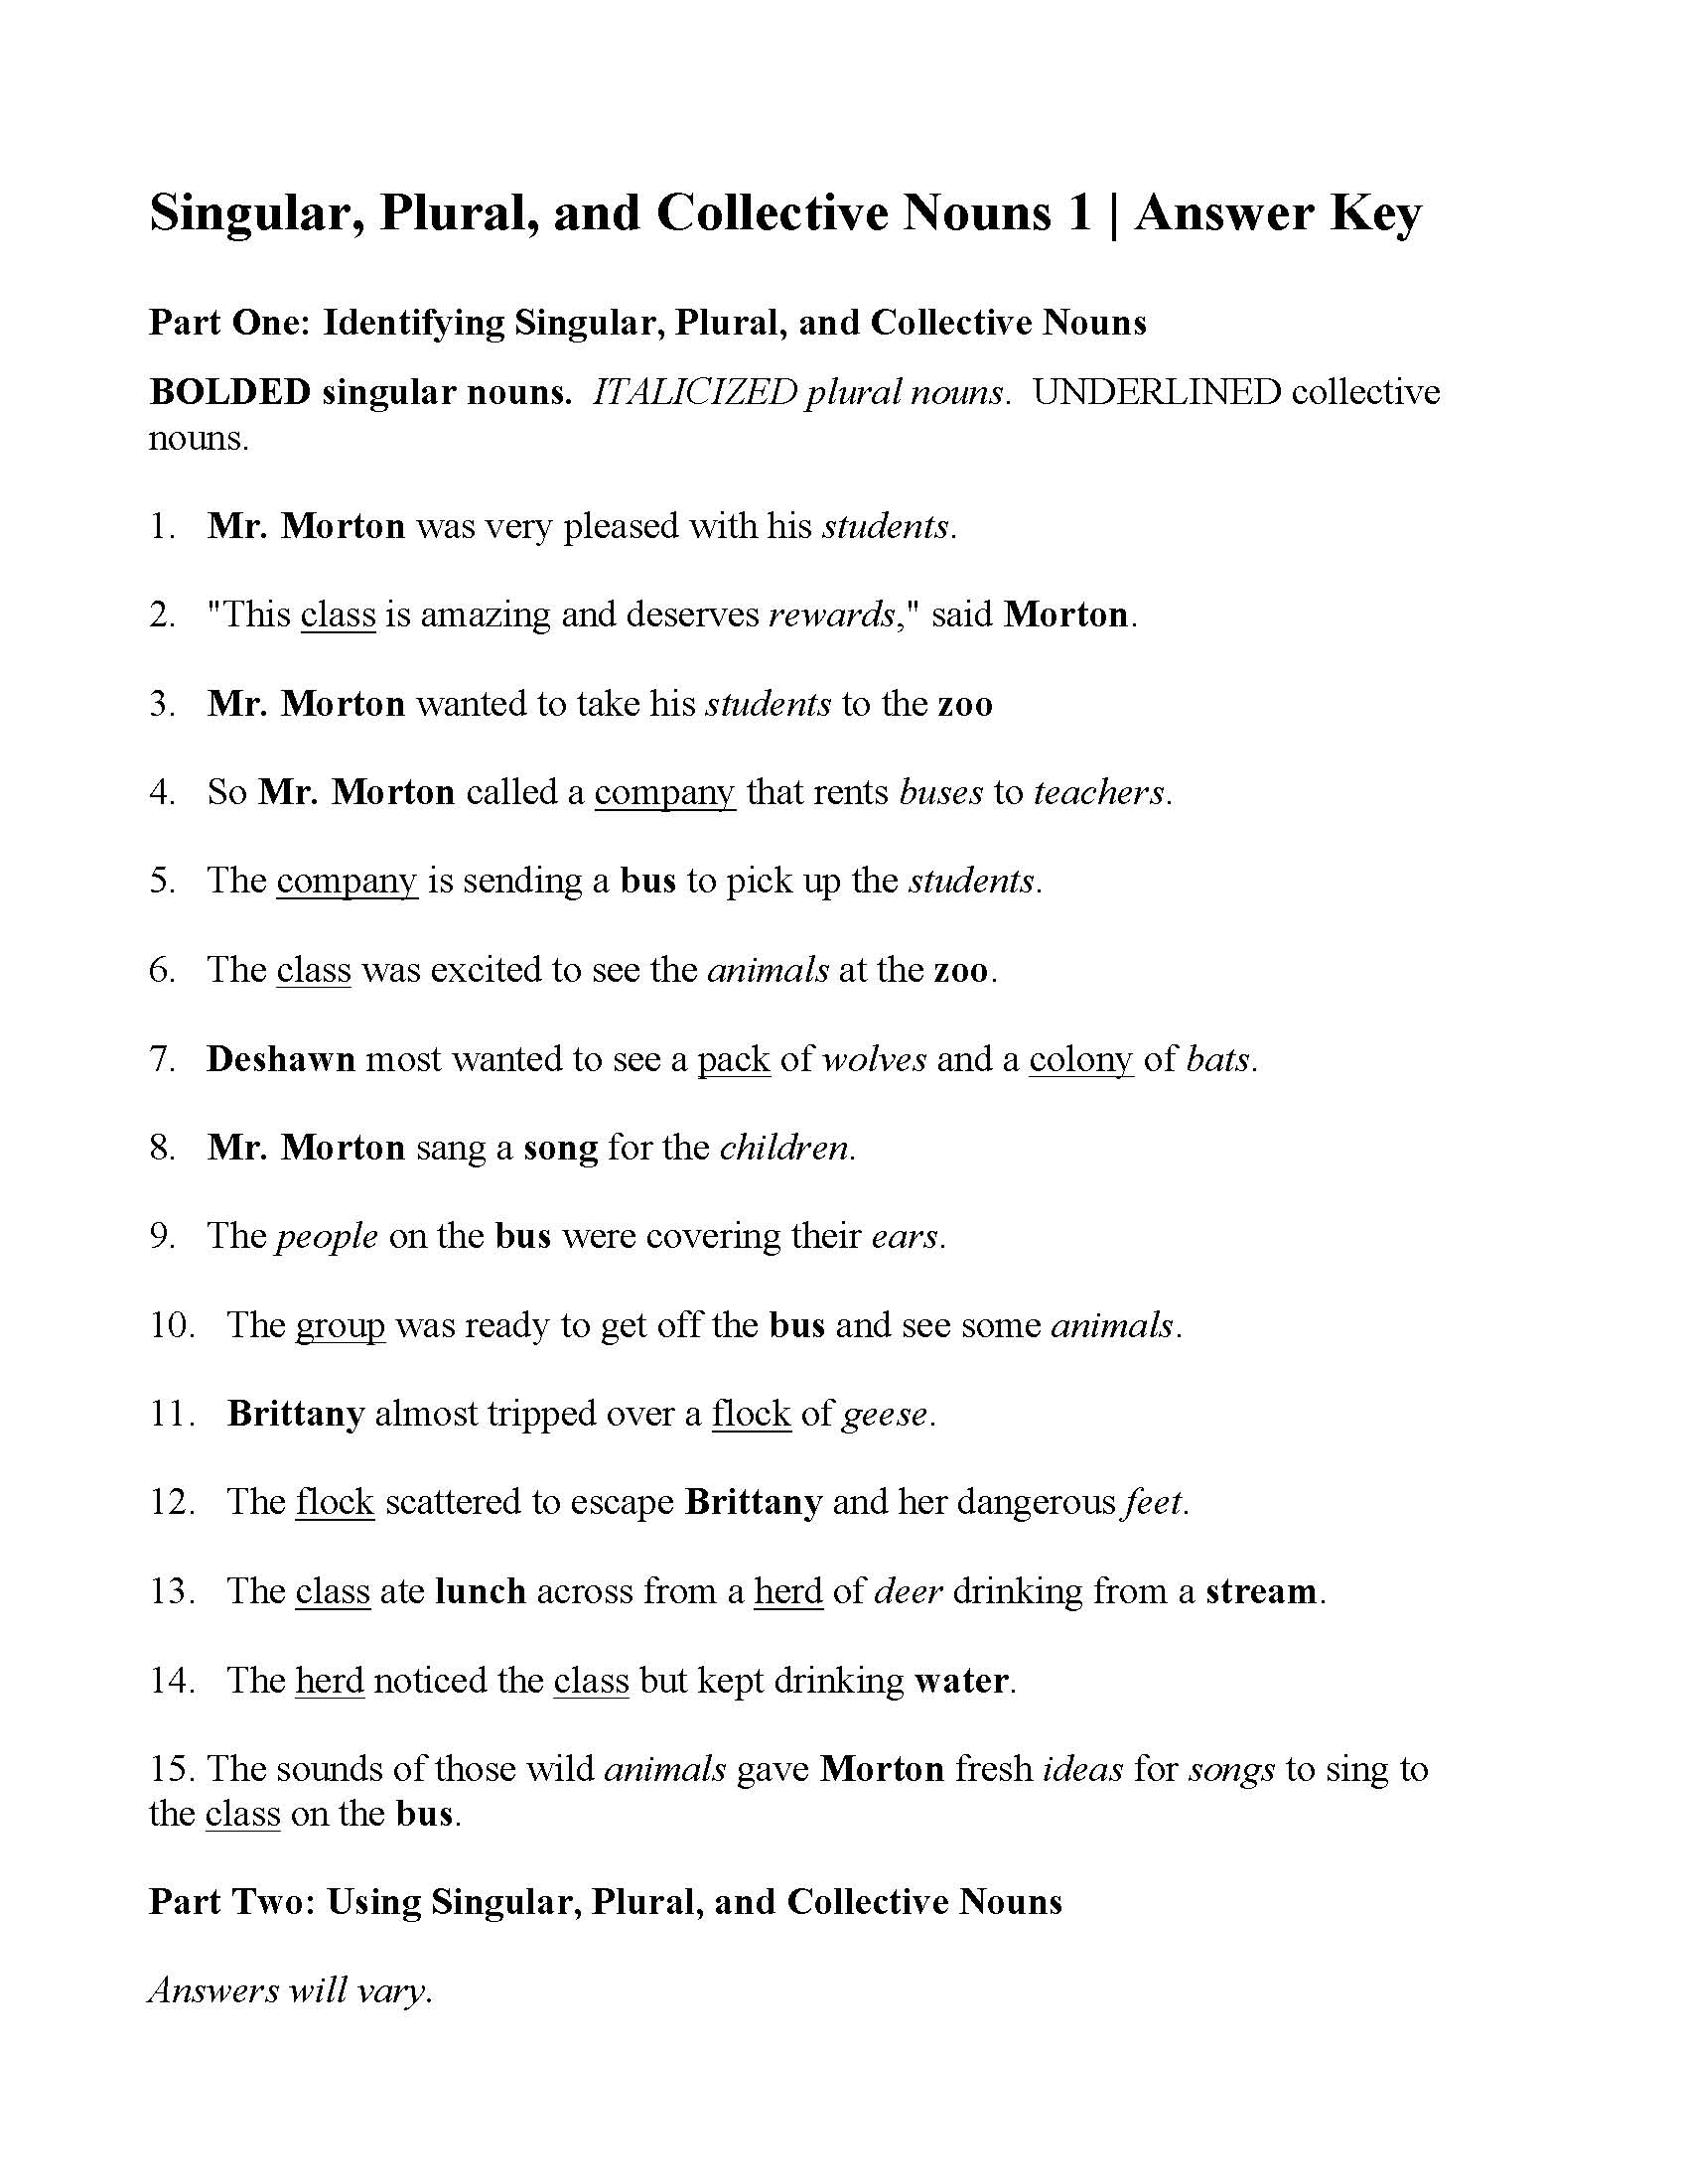 collective-nouns-sentences-worksheets-worksheets-for-kindergarten